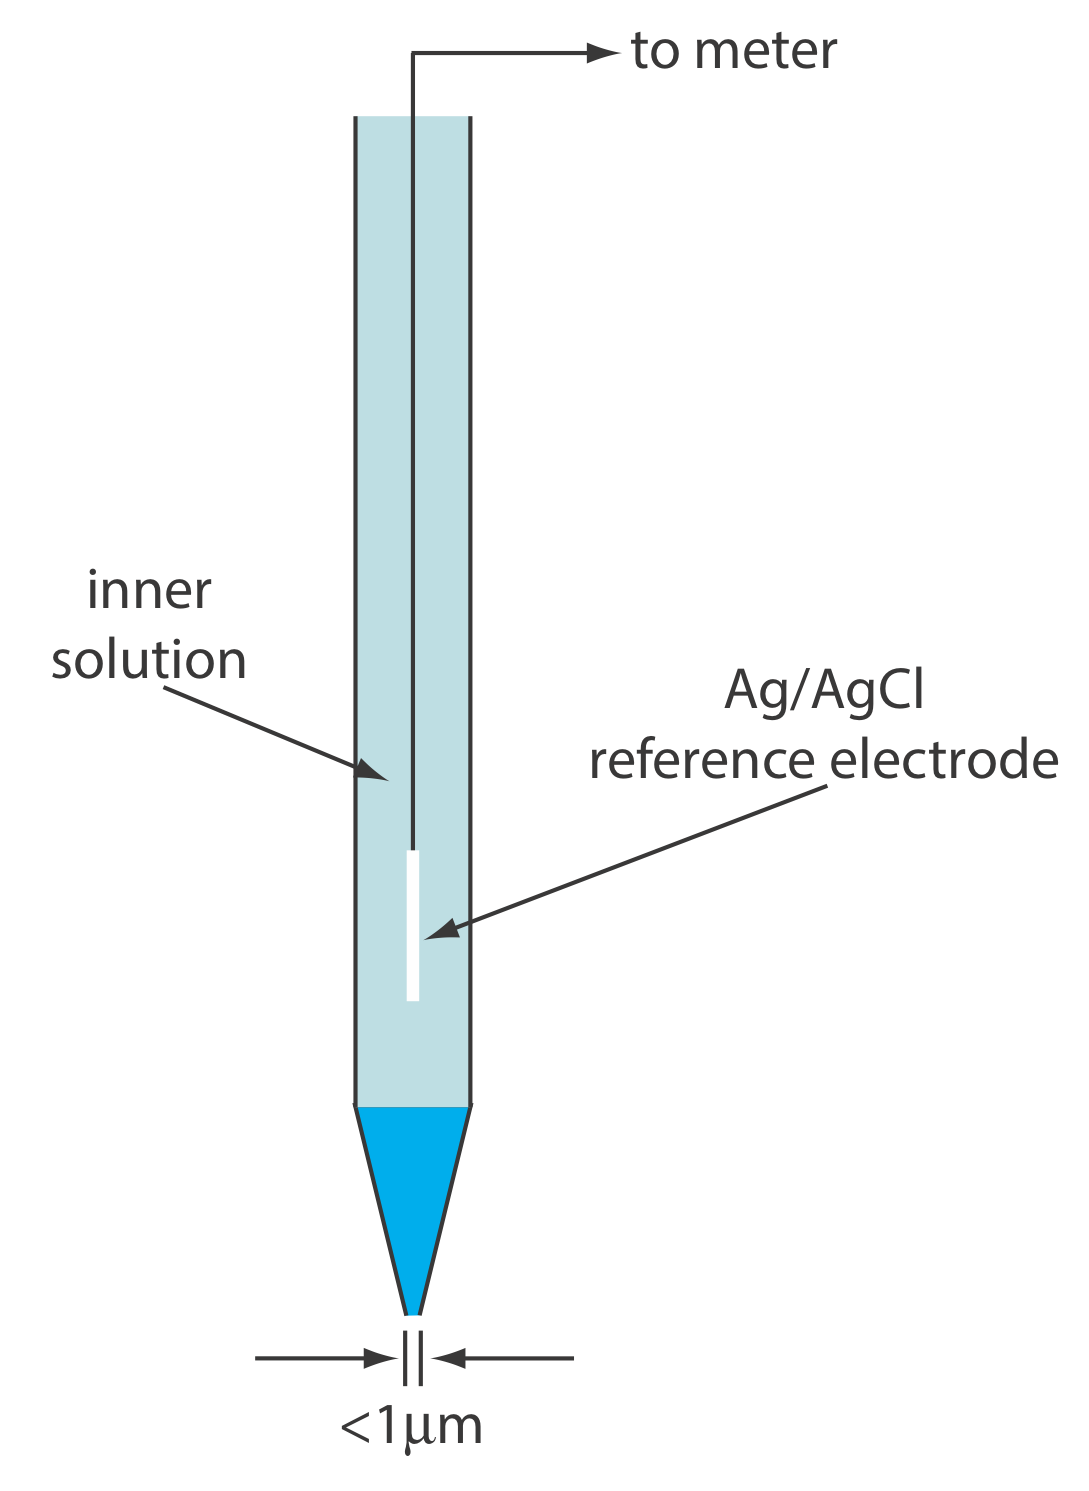 El microelectrodo selectivo de iones a base de líquido consiste en una solución interna y un electrodo de referencia de Ag/AgCl con una abertura en la parte inferior con un diámetro menor a 1 micrómetro.